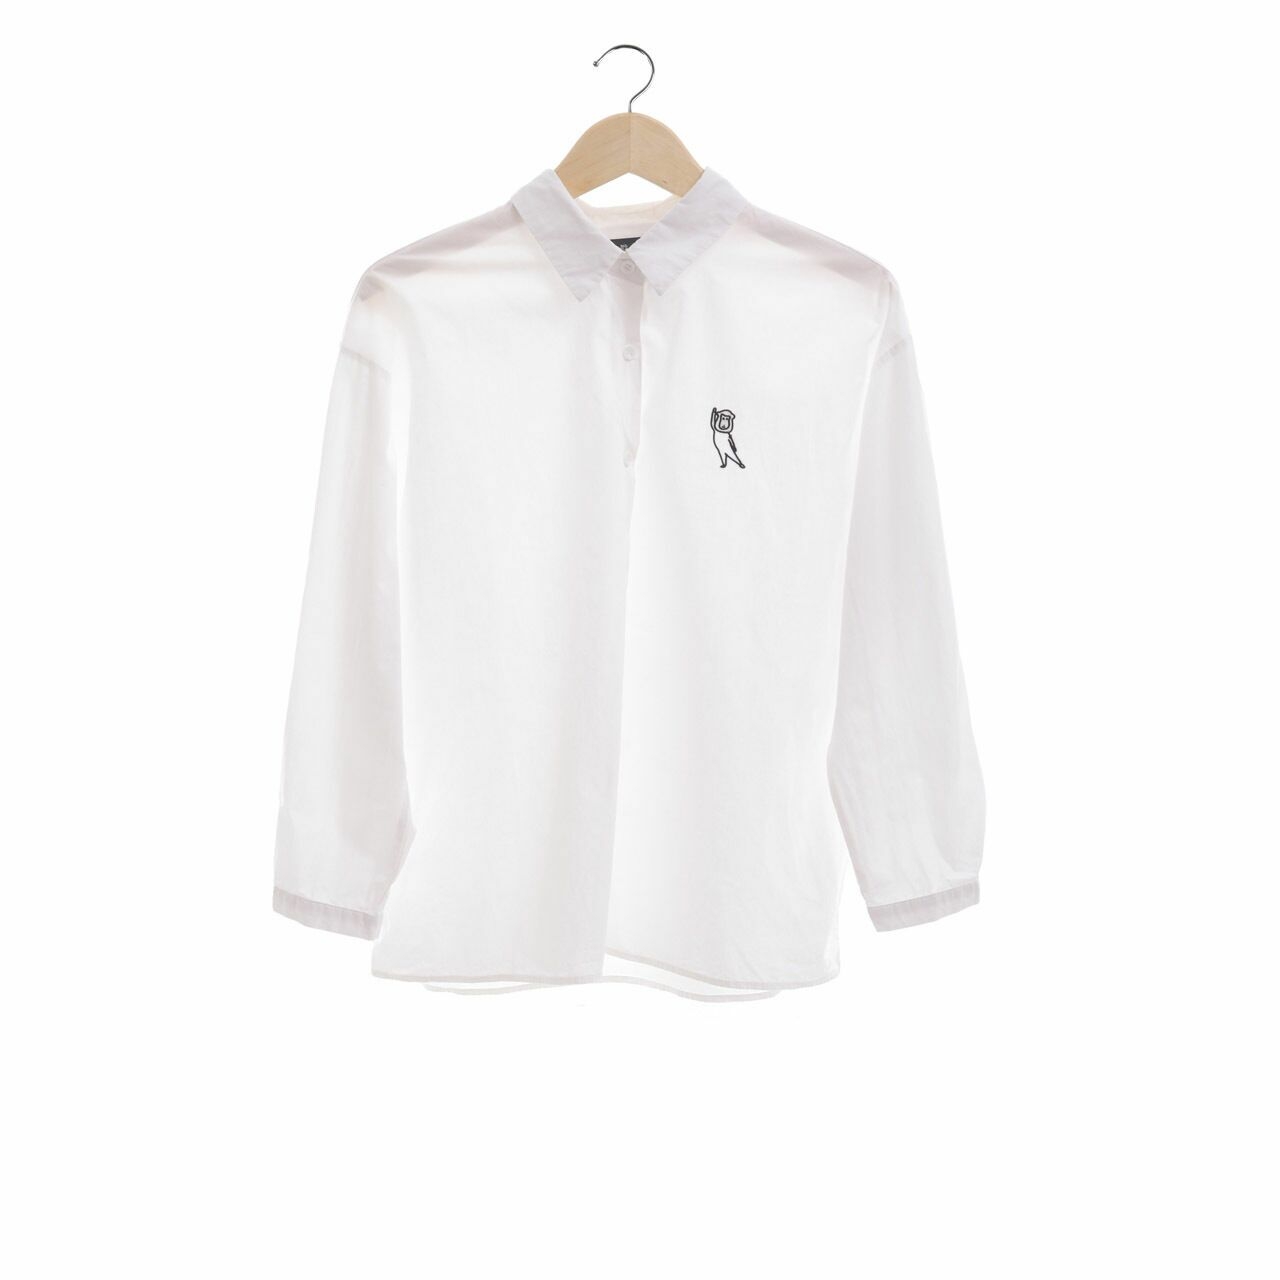 3Mongkis x Nazla Alifa White Long Sleeve Shirt